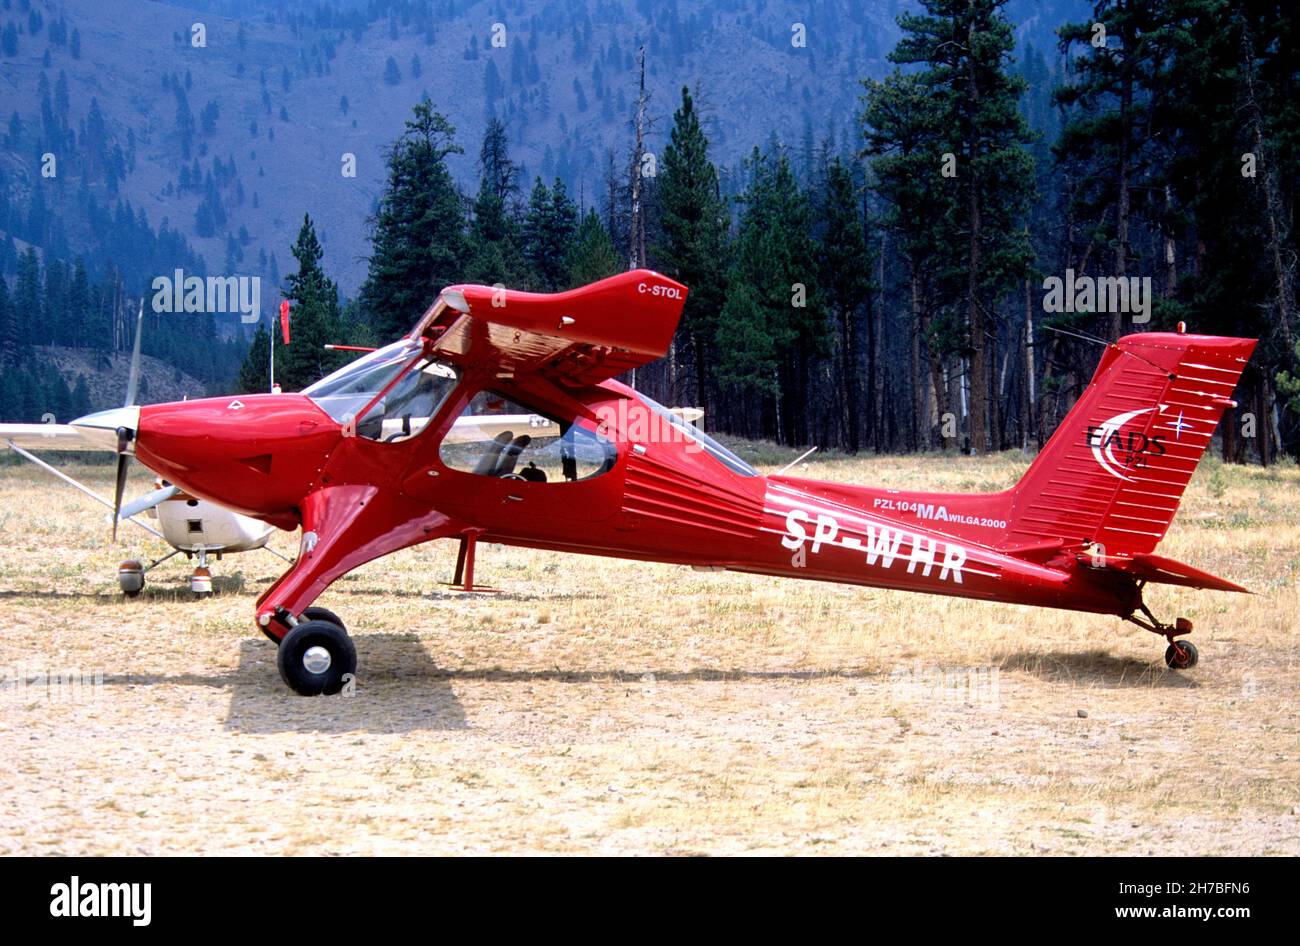 PZL-104 Wilga aircraft parked at a backcountry airstrip in central Idaho Stock Photo